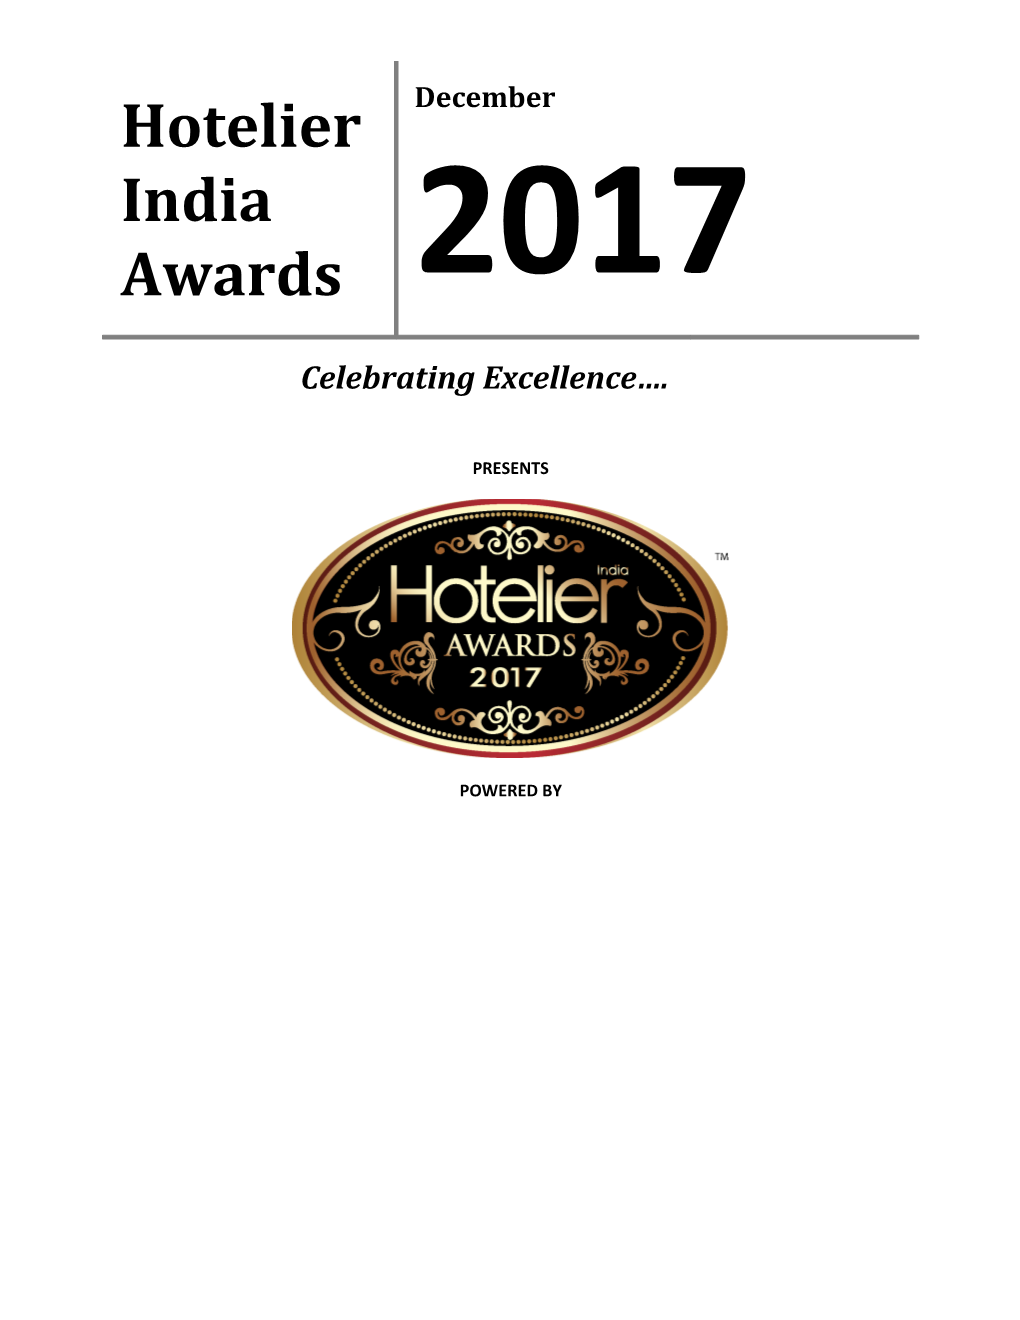 Hotelier India Awards